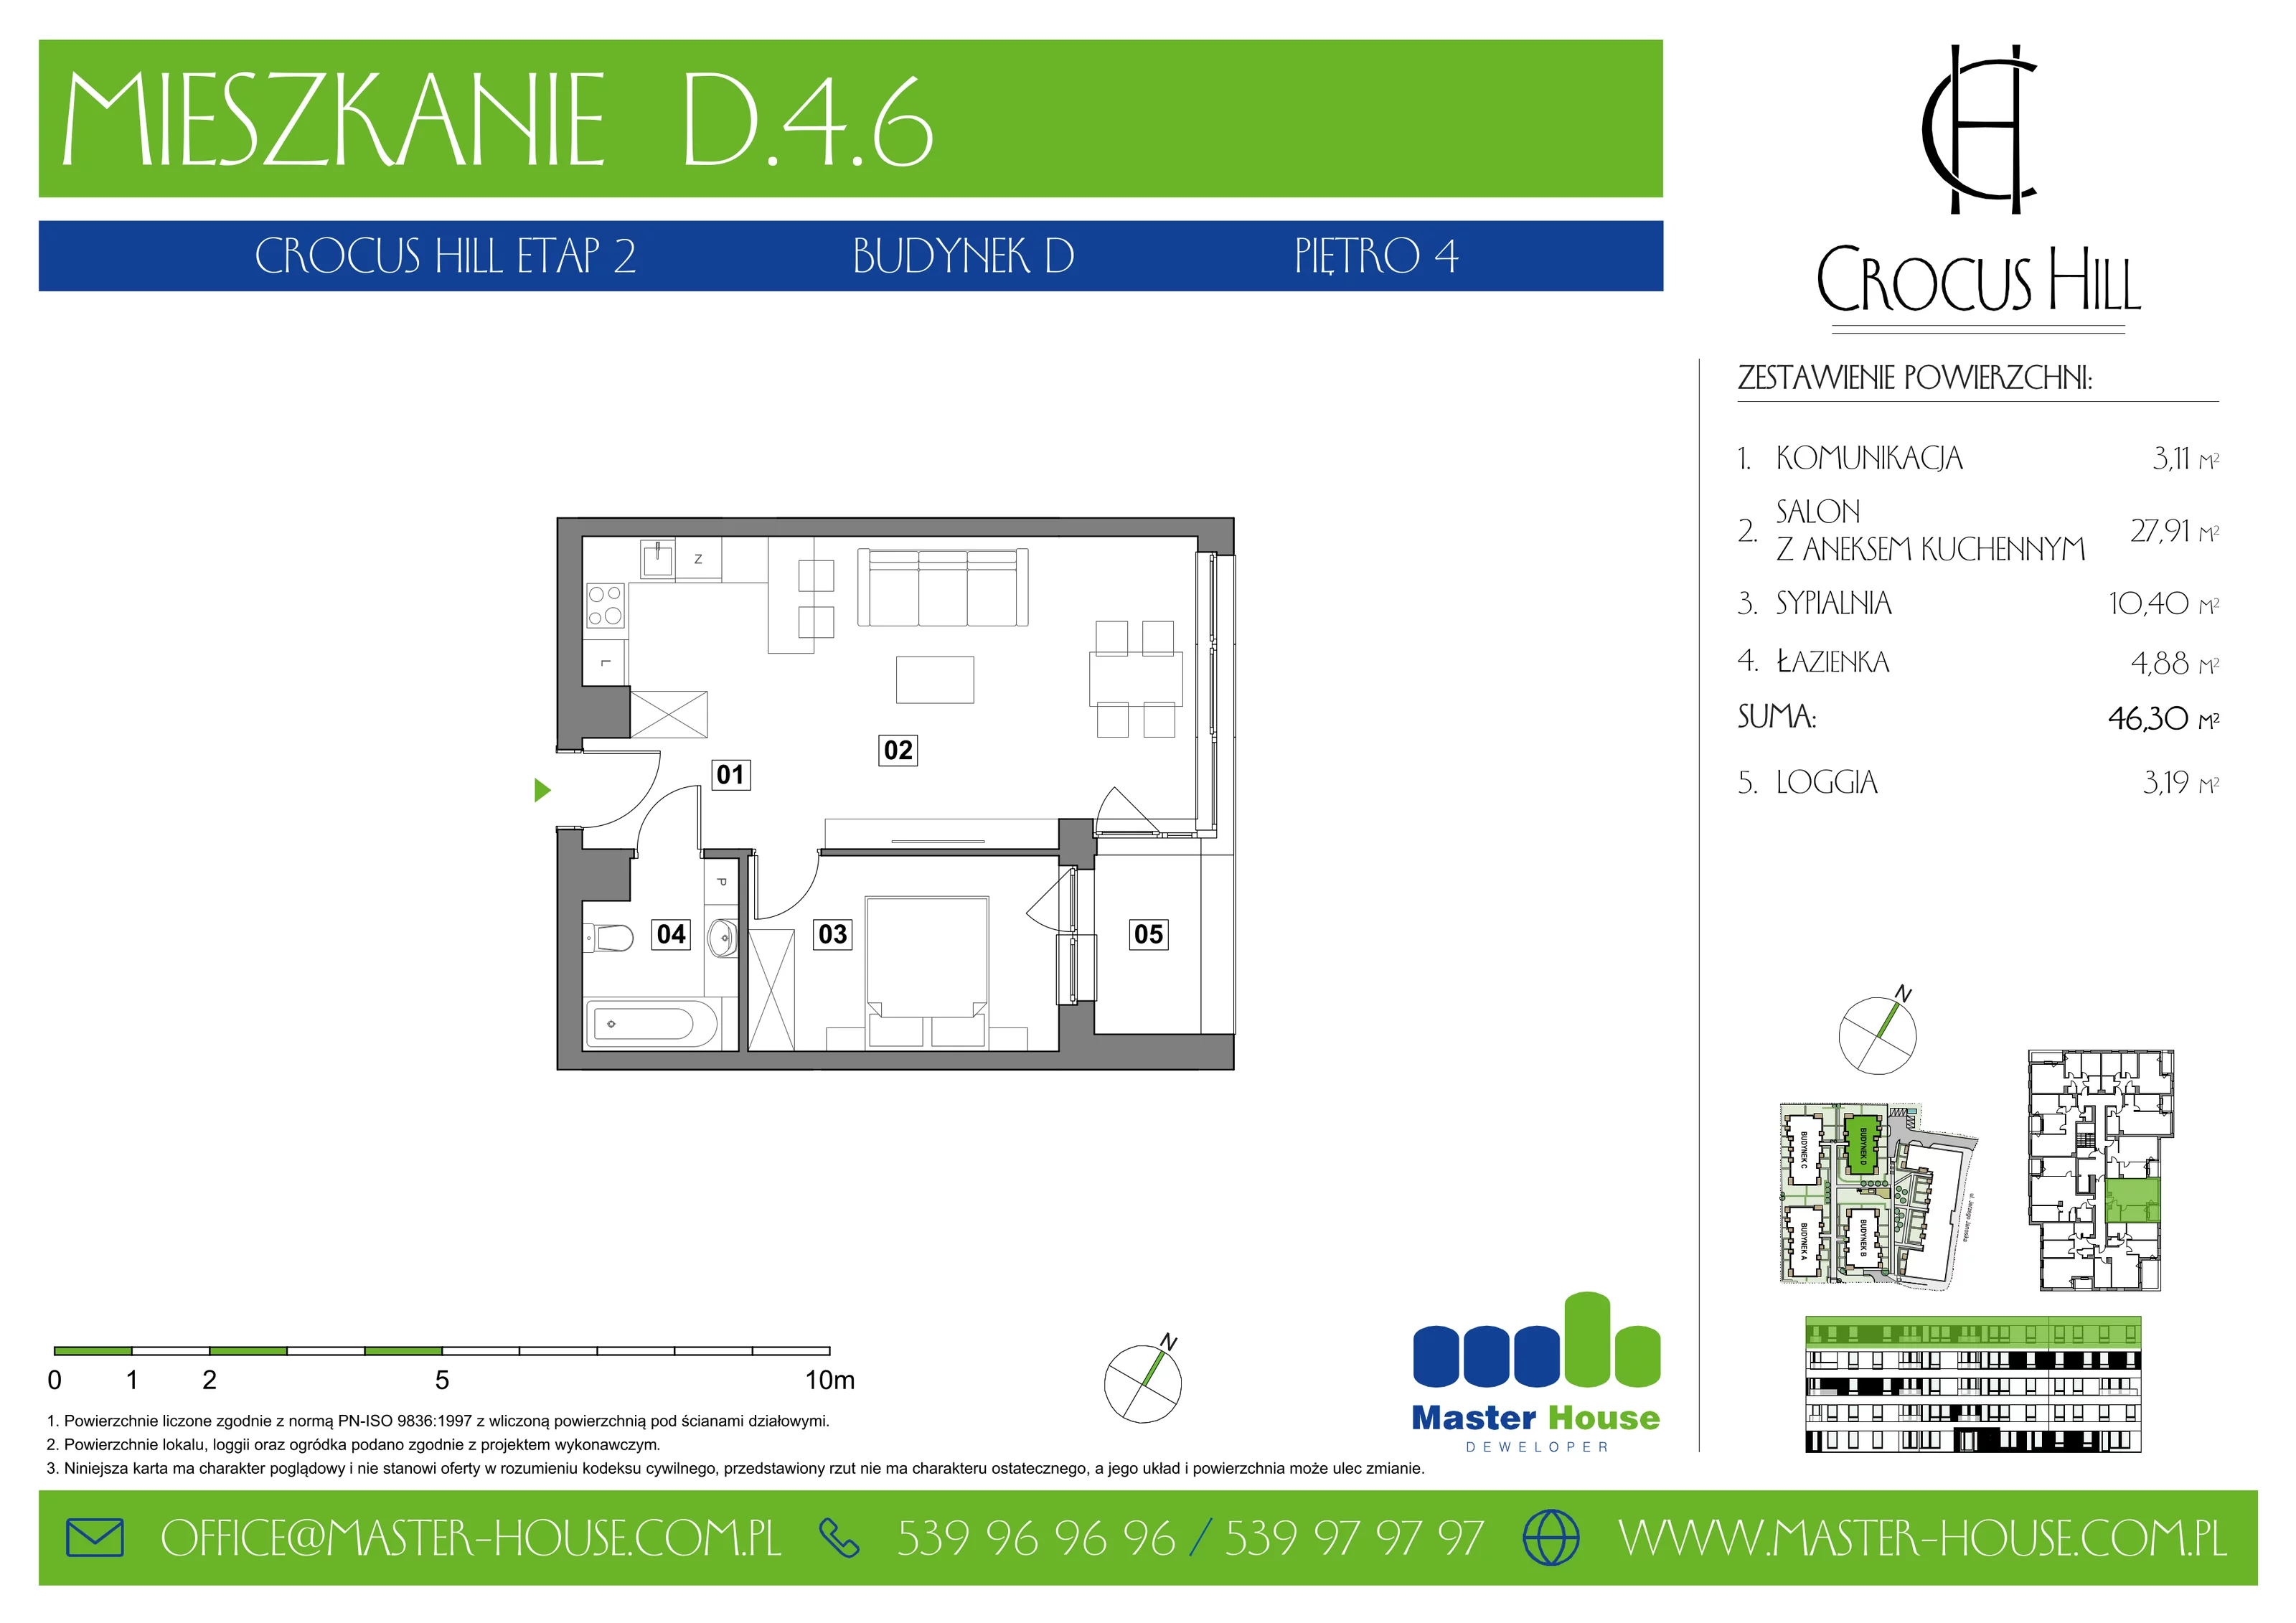 Mieszkanie 46,30 m², piętro 4, oferta nr D.4.6, Crocus Hill, Szczecin, Śródmieście, ul. Jerzego Janosika 2, 2A, 3, 3A